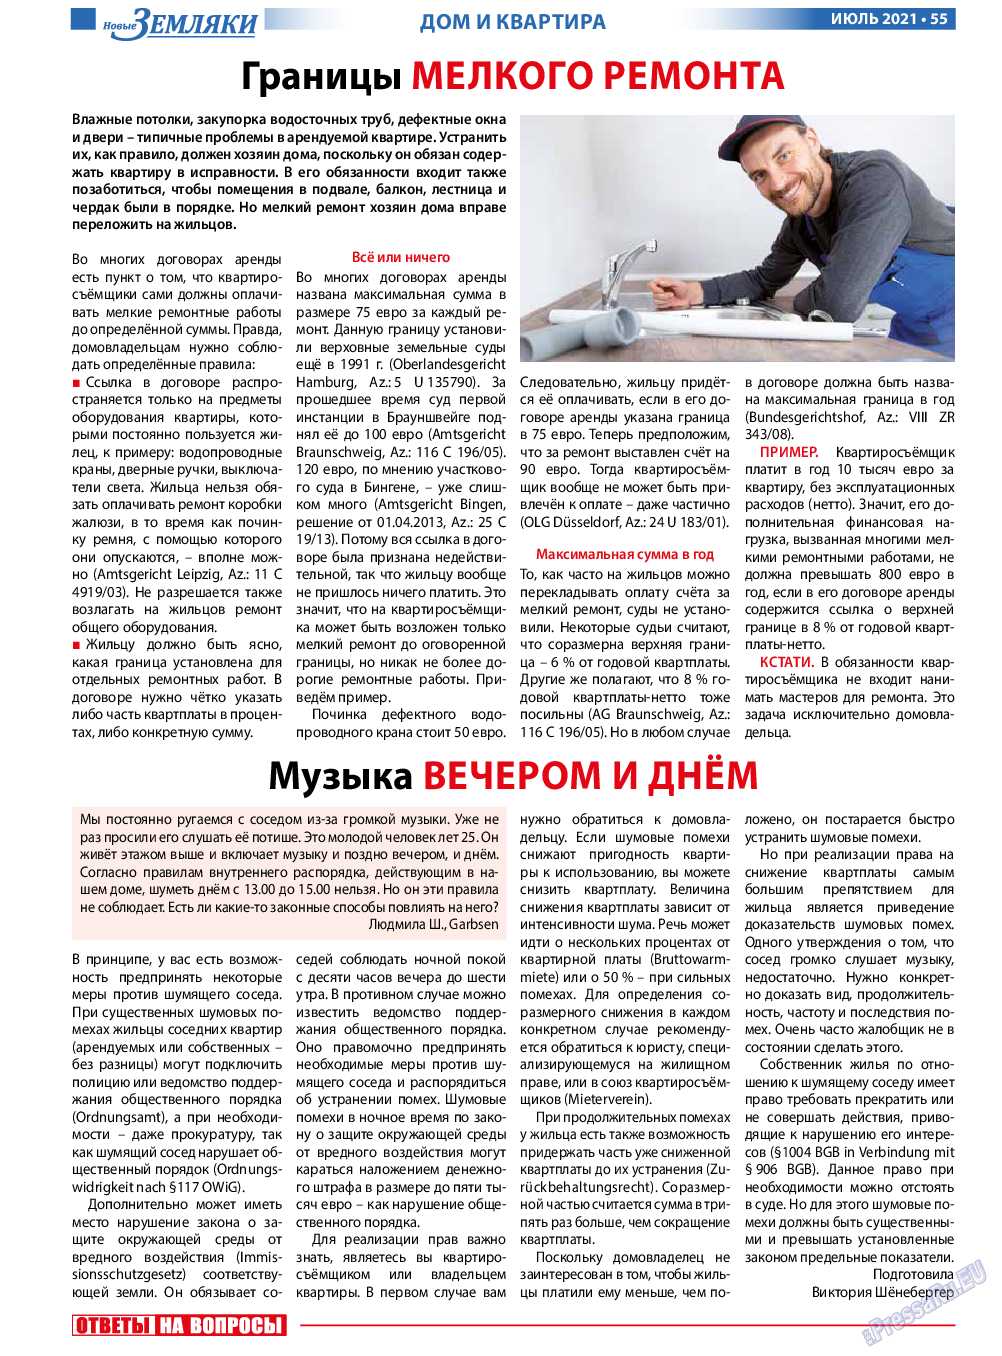 Новые Земляки, газета. 2021 №7 стр.55